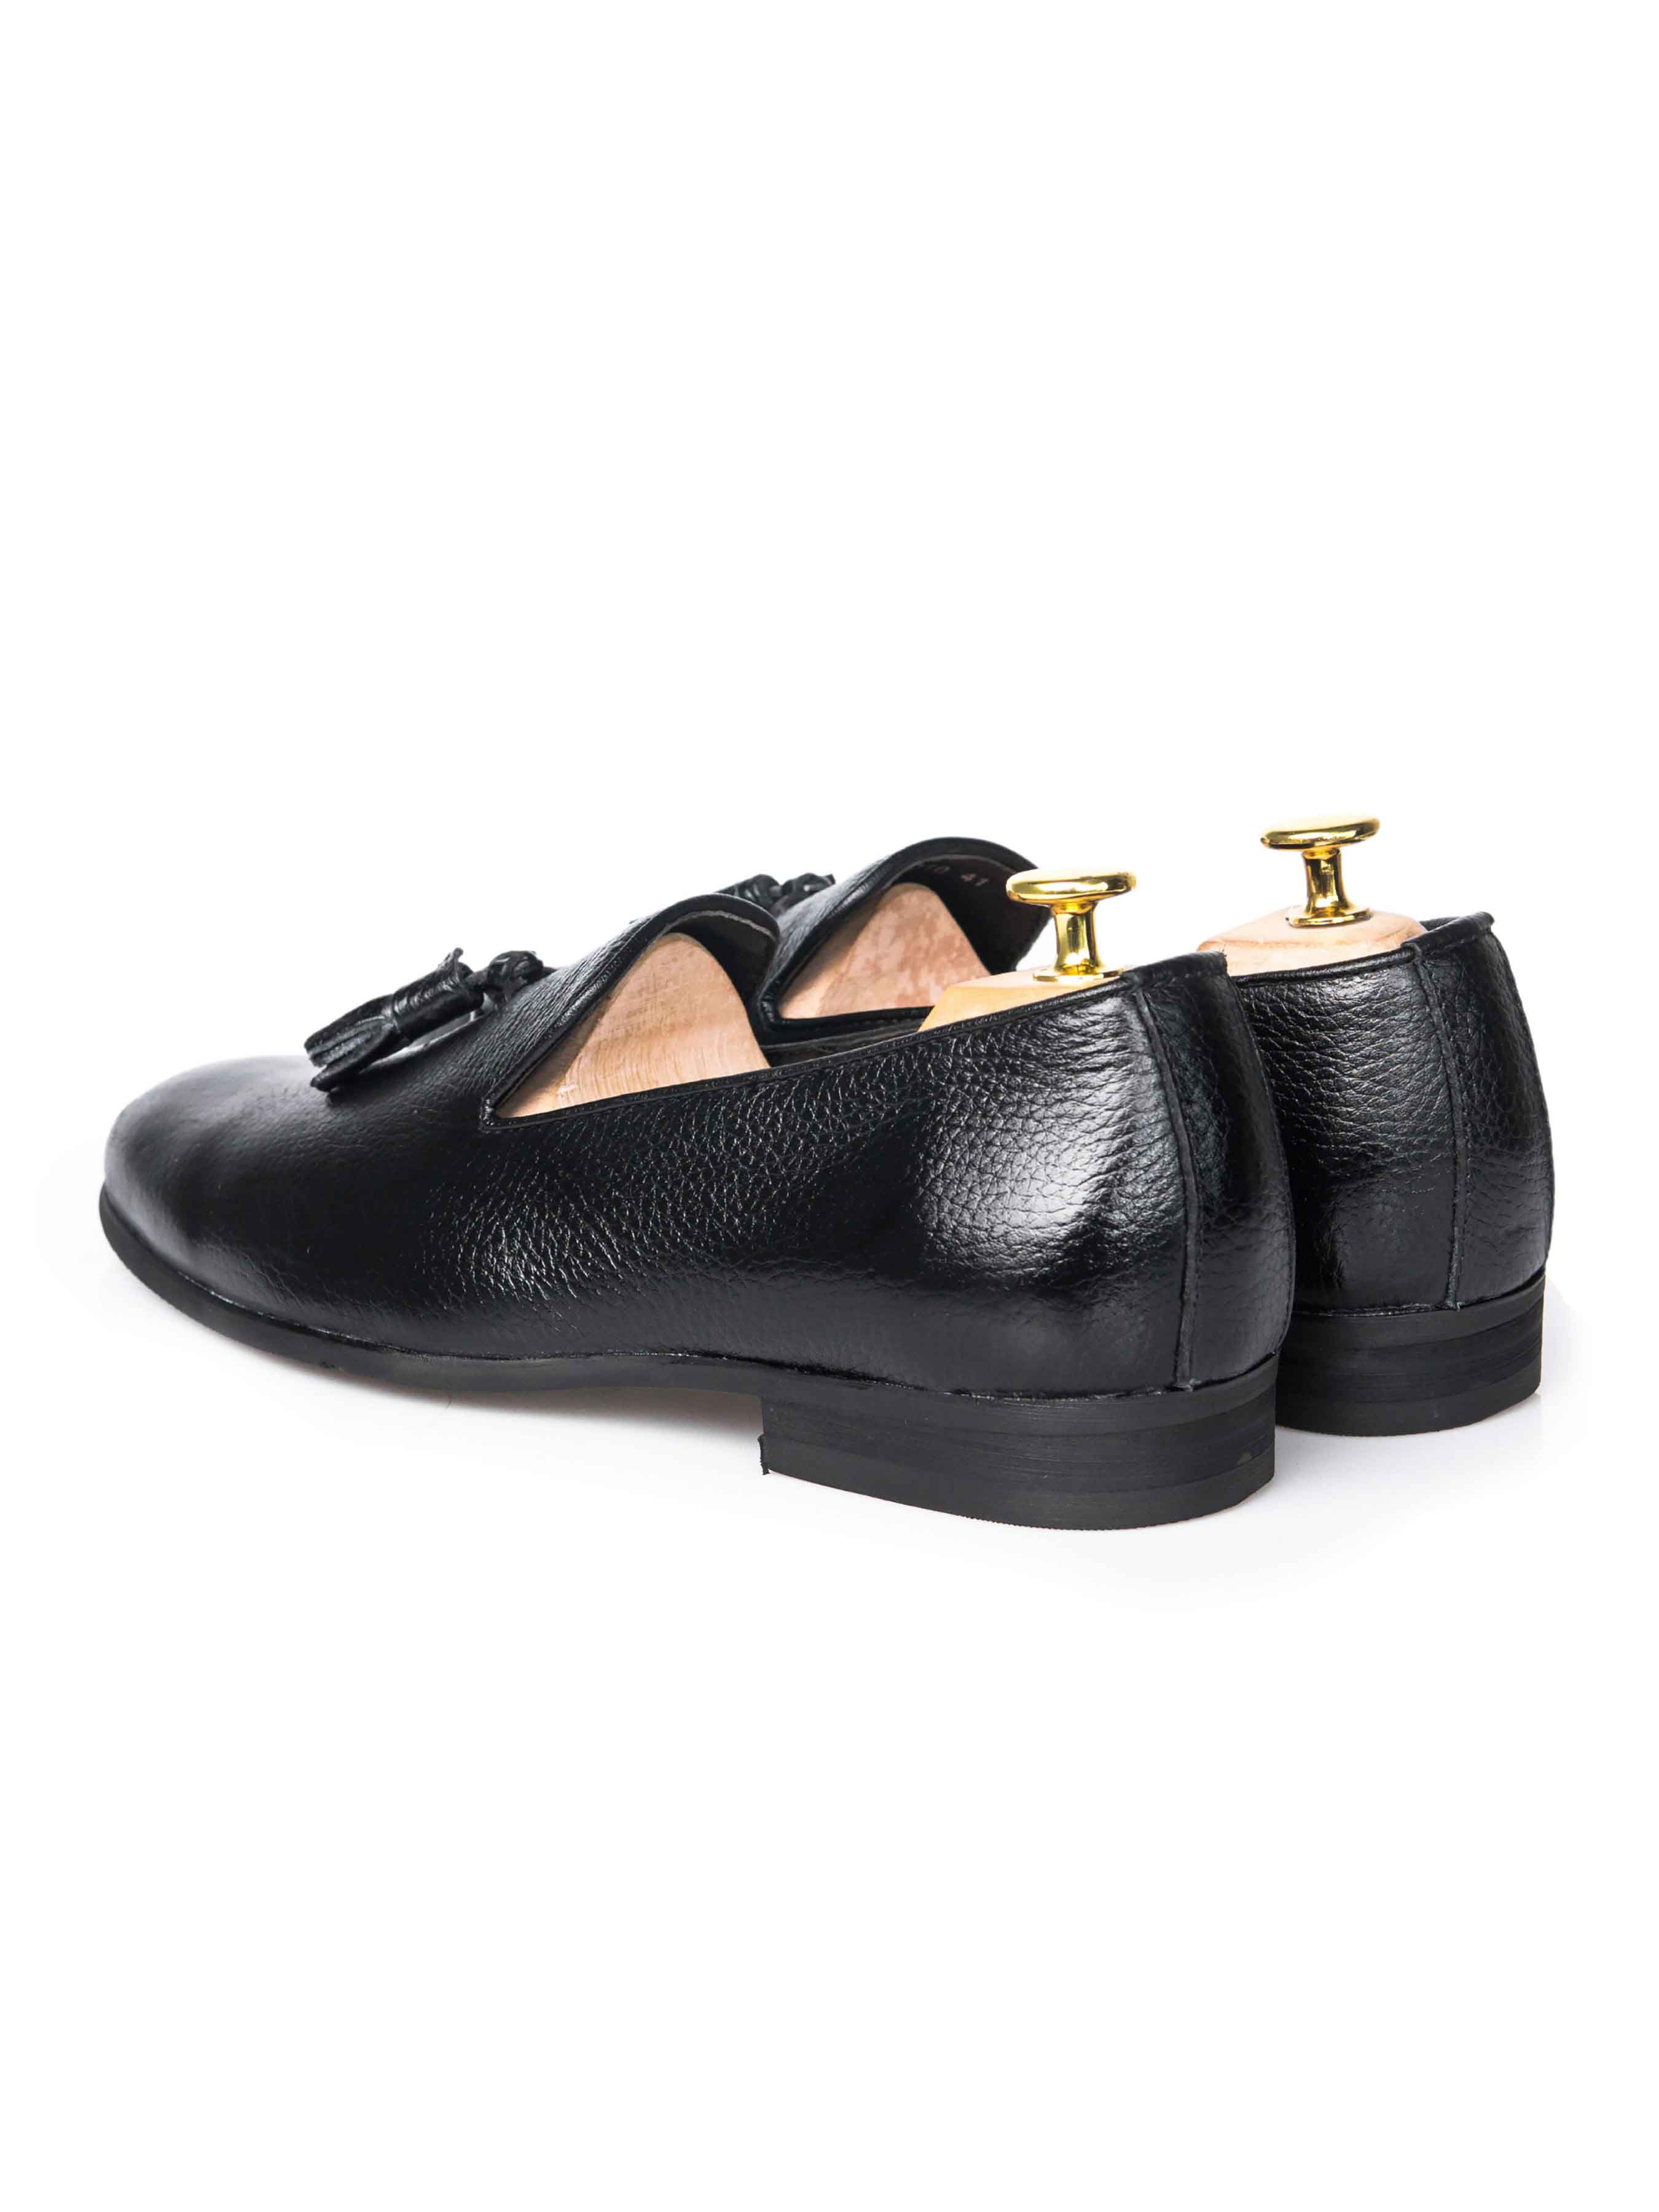 Loafer Slipper - Black Pebble Grain Leather